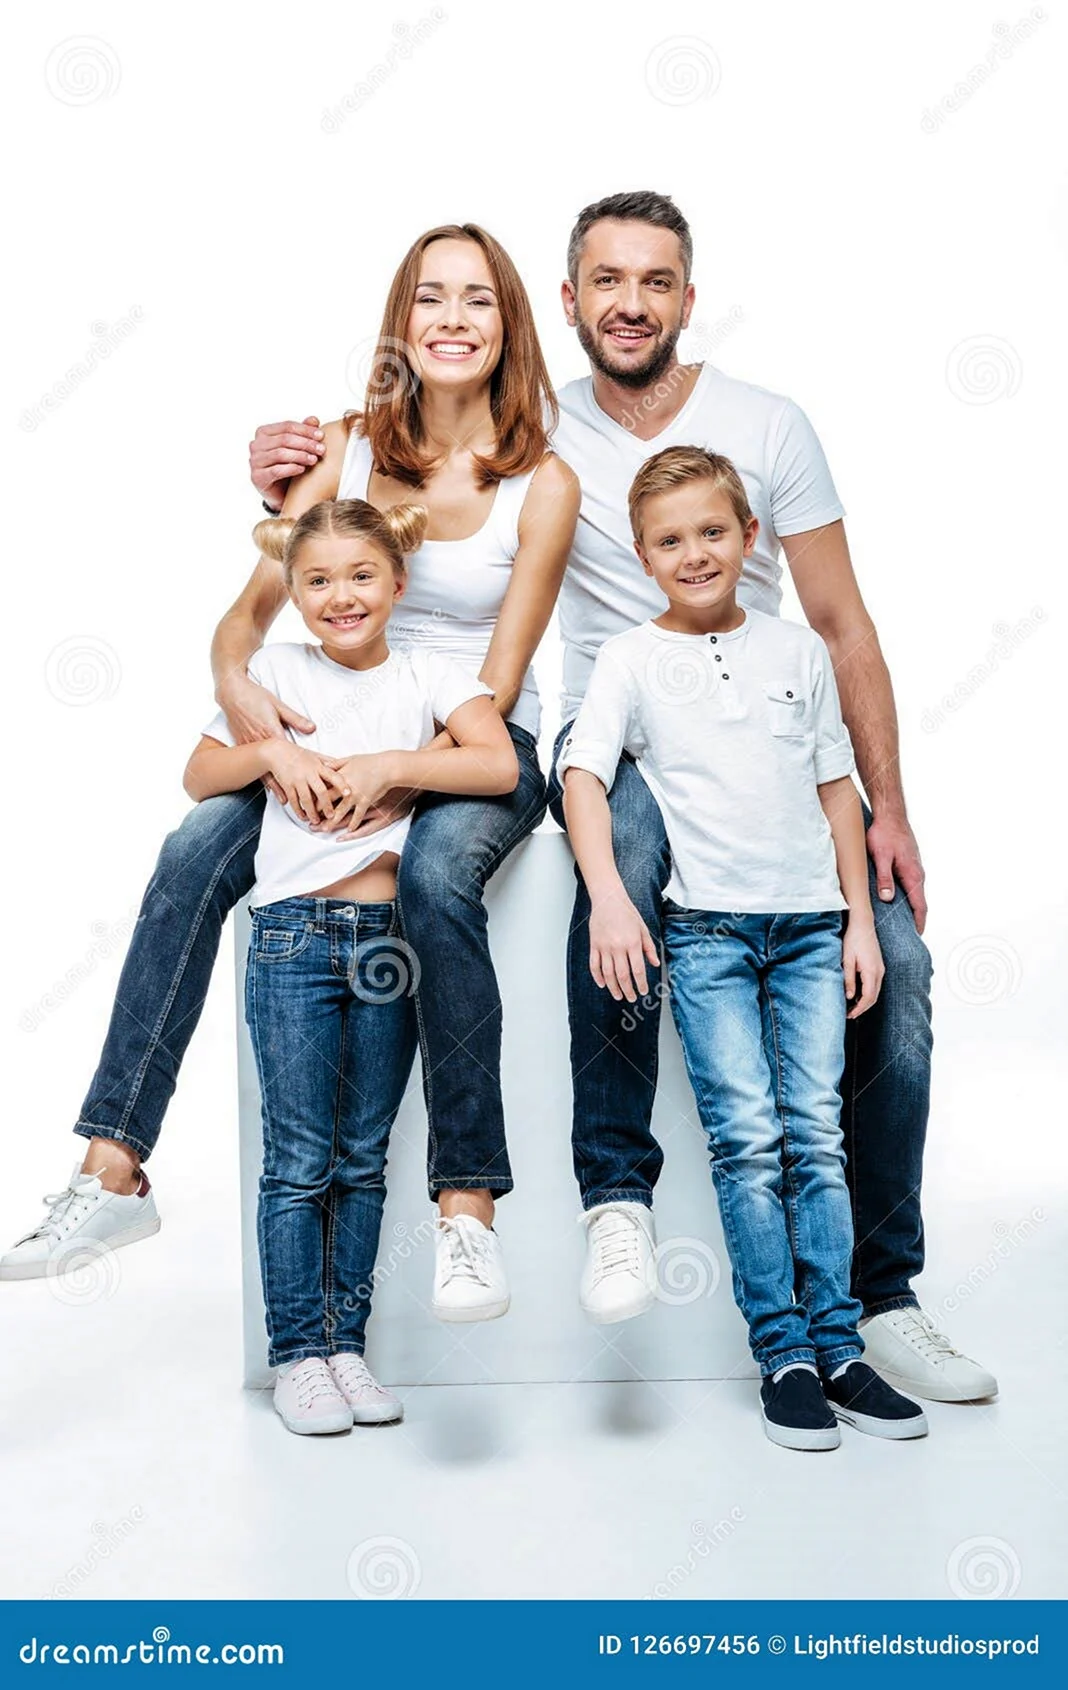 Фотосессия в белых футболках и джинсах семейная